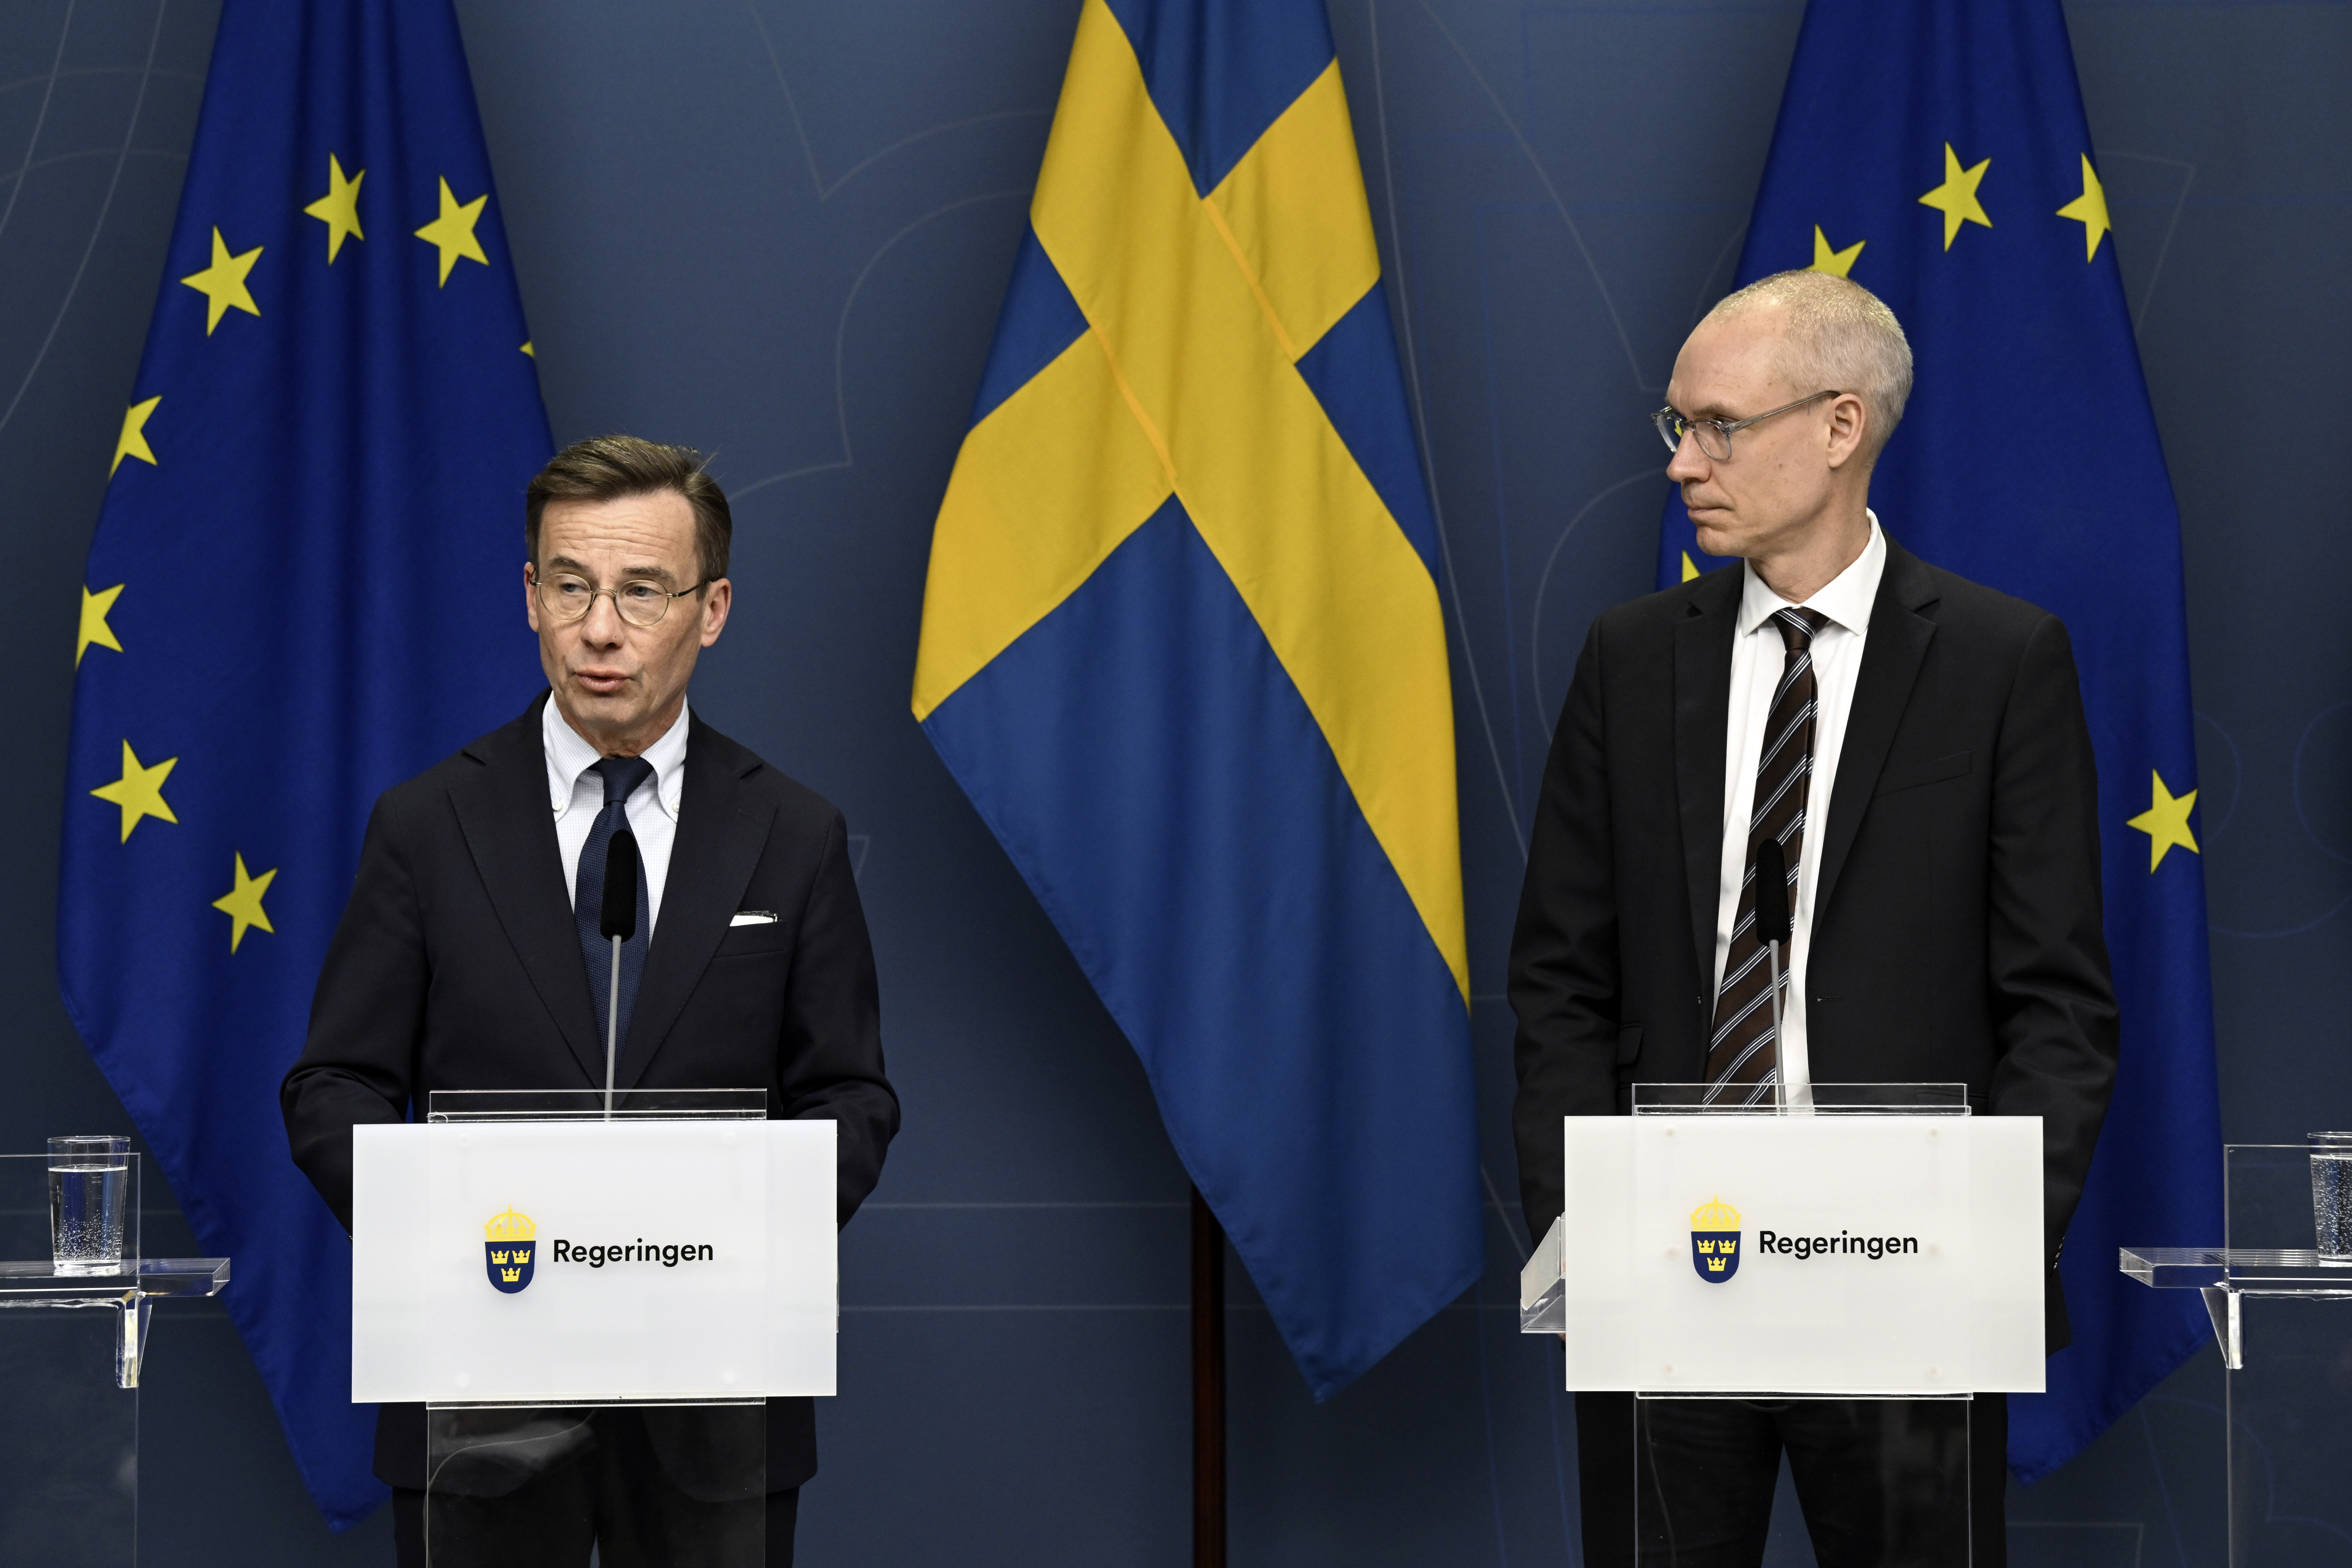 El primer ministro de Suecia, Ulf Kristersson (izquierda), y Oscar Stenstroem, jefe negociador en el proceso de ingreso a la OTAN, ofrecen una conferencia de prensa acerca de la adhesión, en Estocolmo, el 14 de marzo de 2023. (Fredrik Sandberg/TT News Agency via AP)